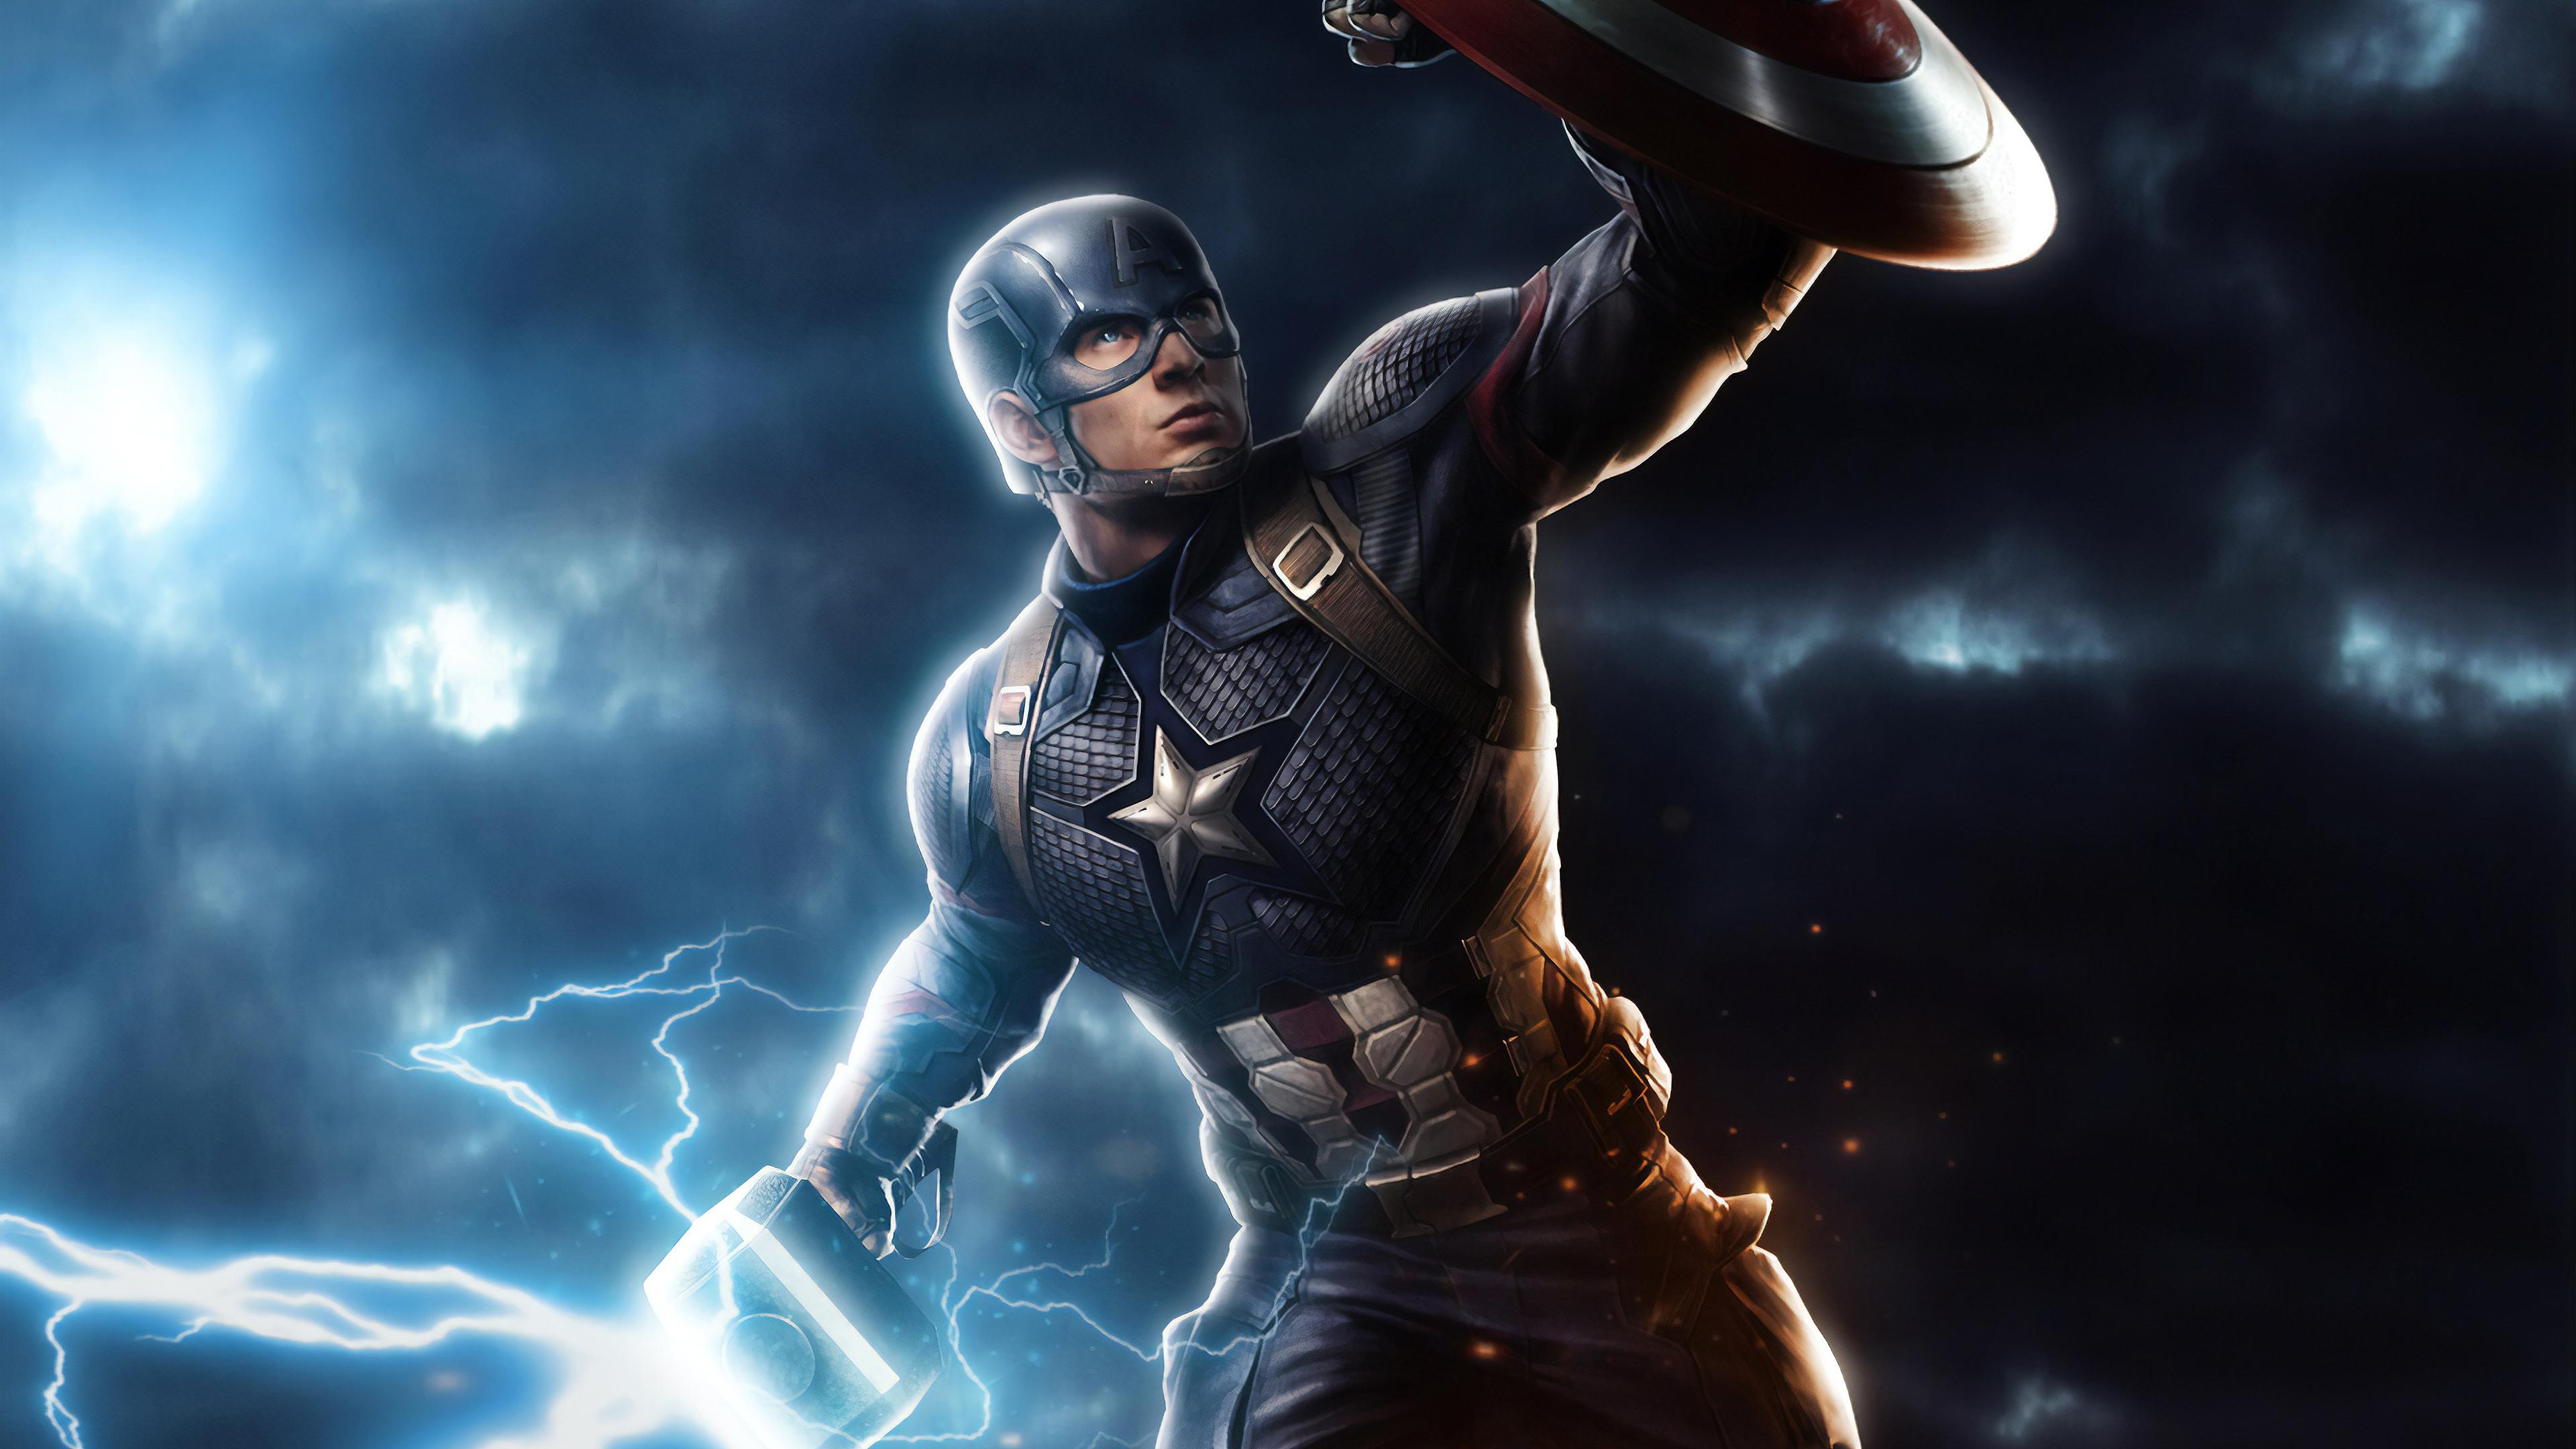 3840 x 2160 · jpeg - Captain America Mjolnir Avengers Endgame 4k Art superheroes wallpapers ...